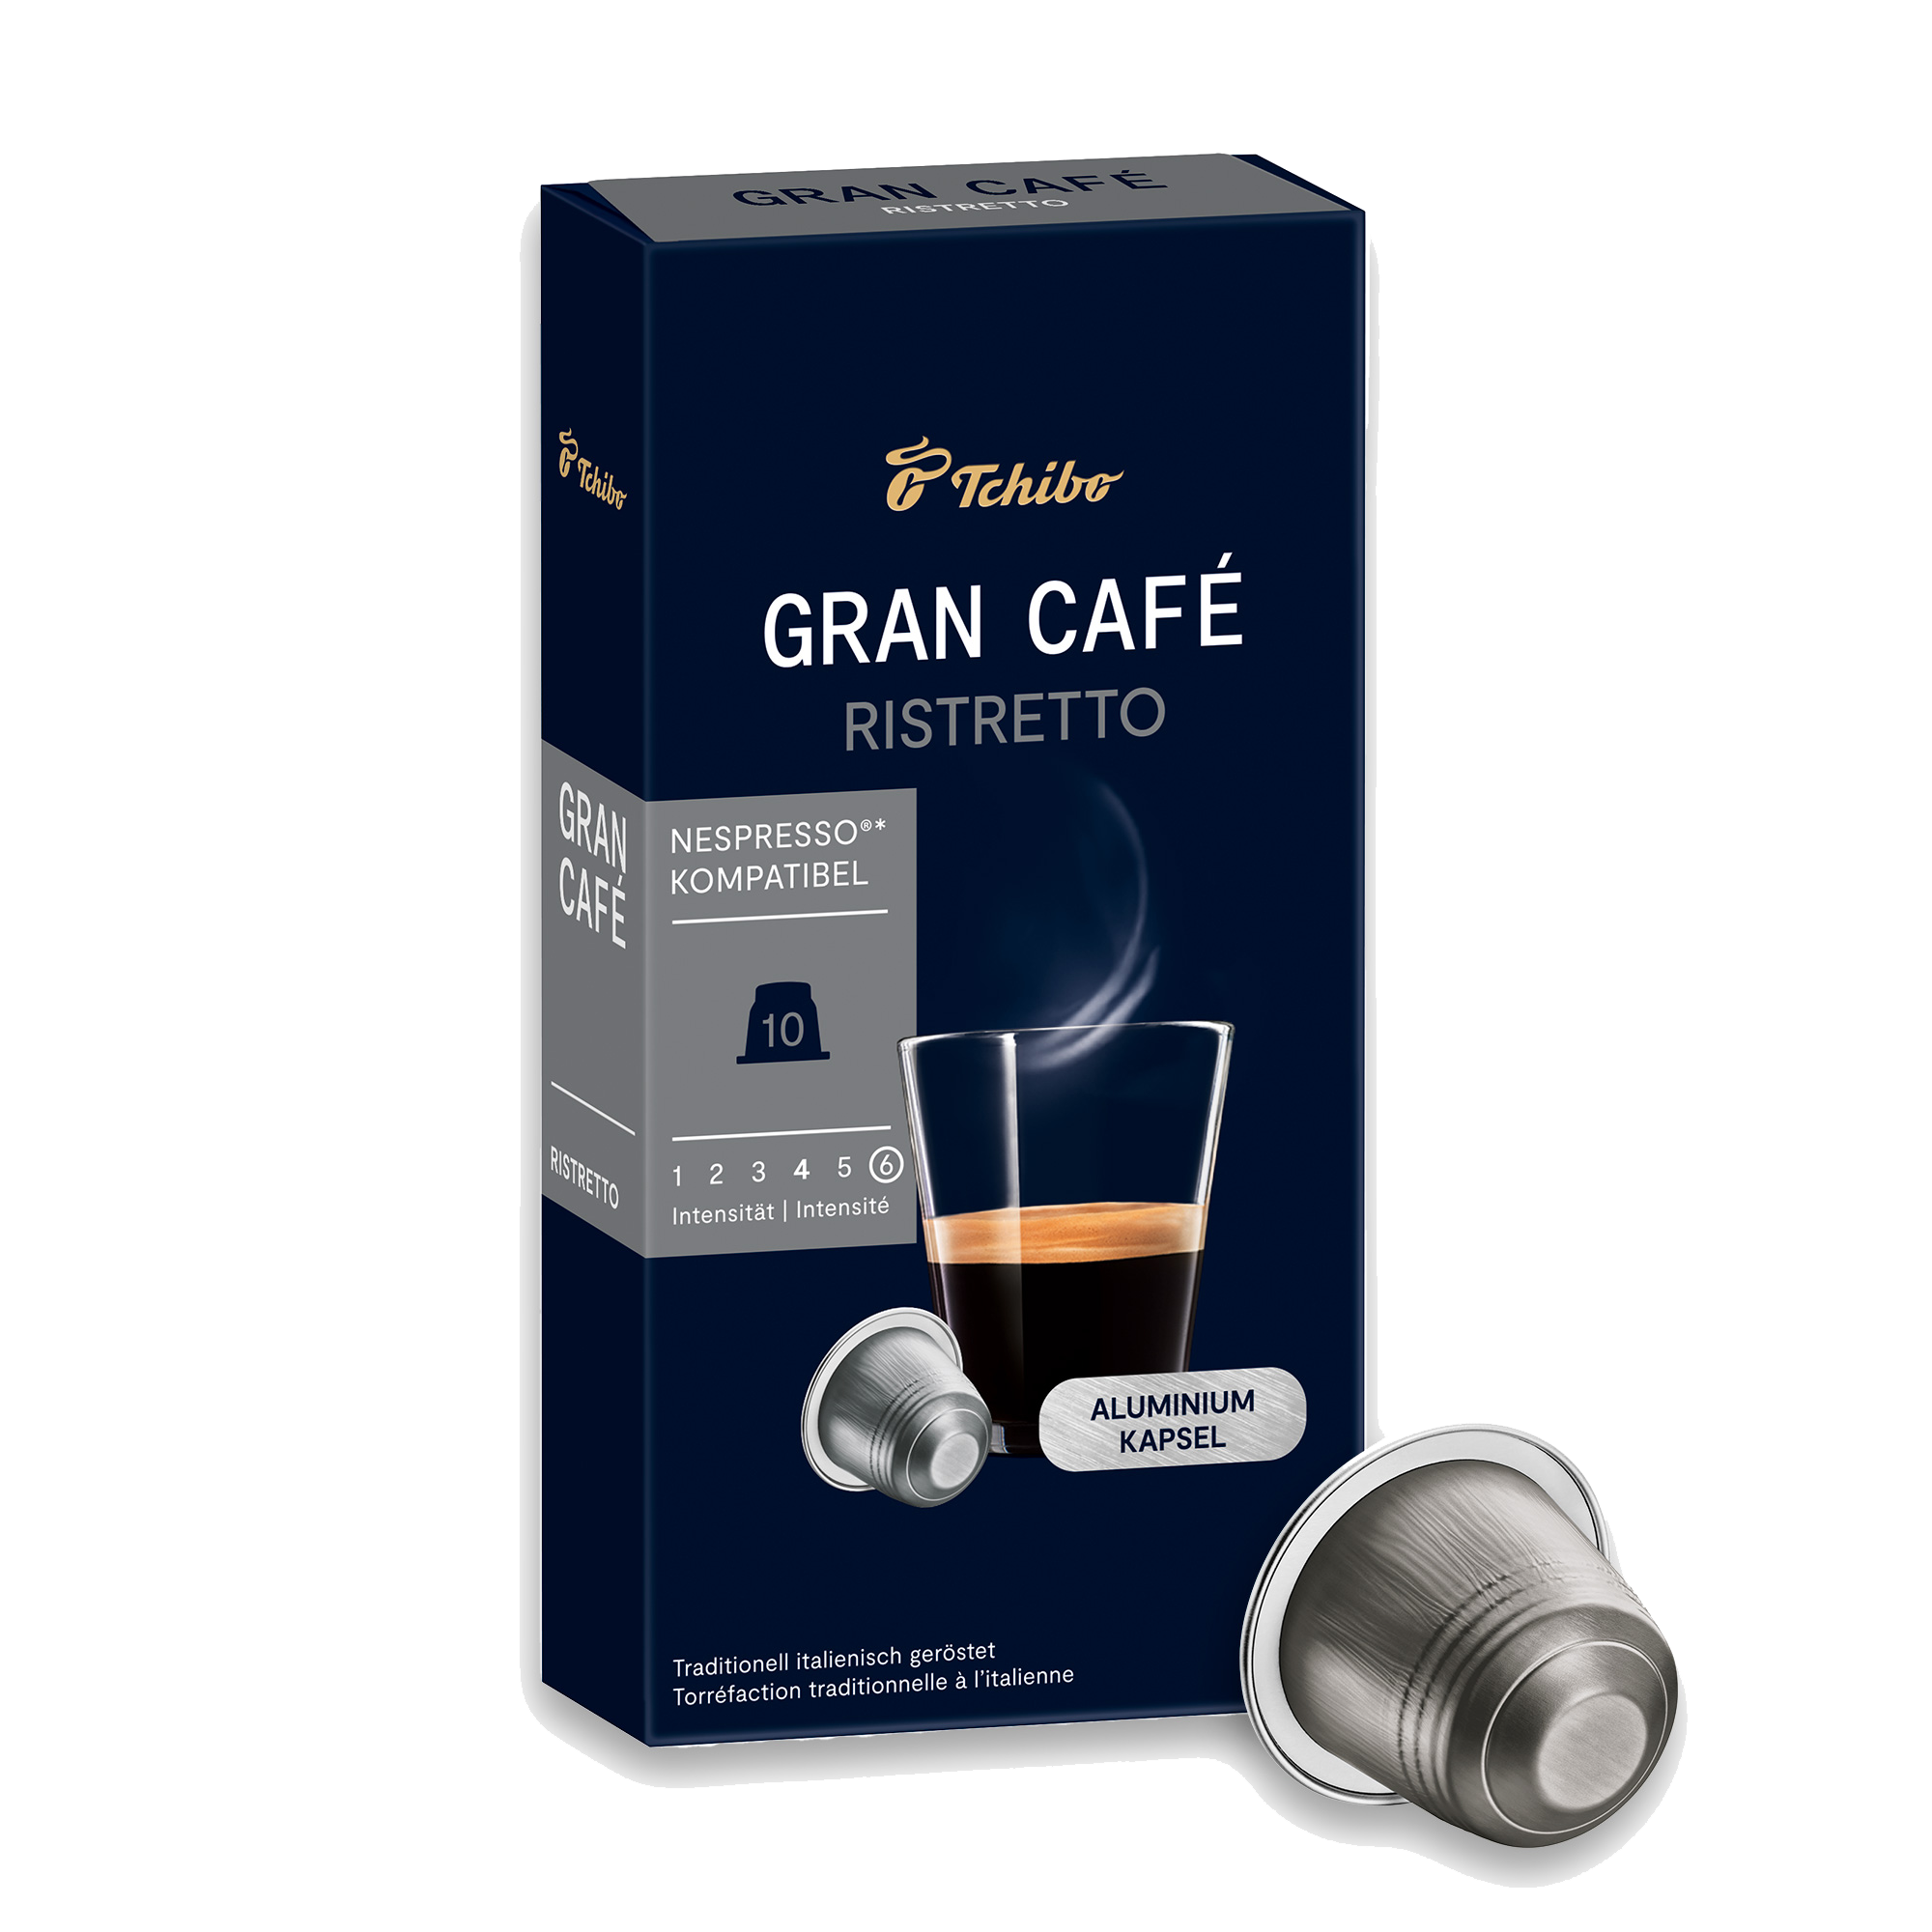 Ristretto espresso coffee capsules 100 ct – Kanubo Coffee